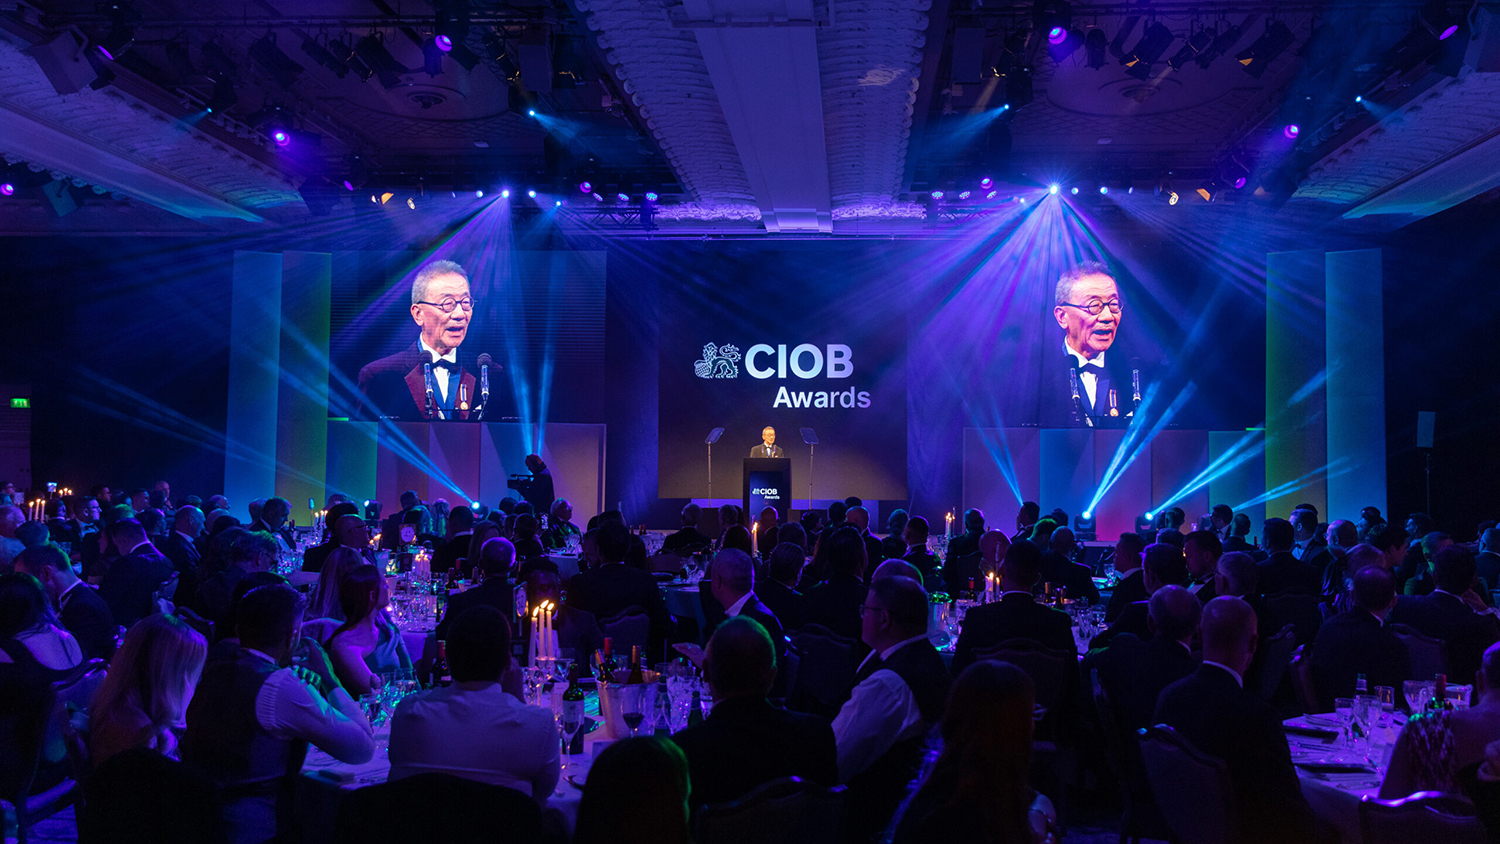 CIOB Awards